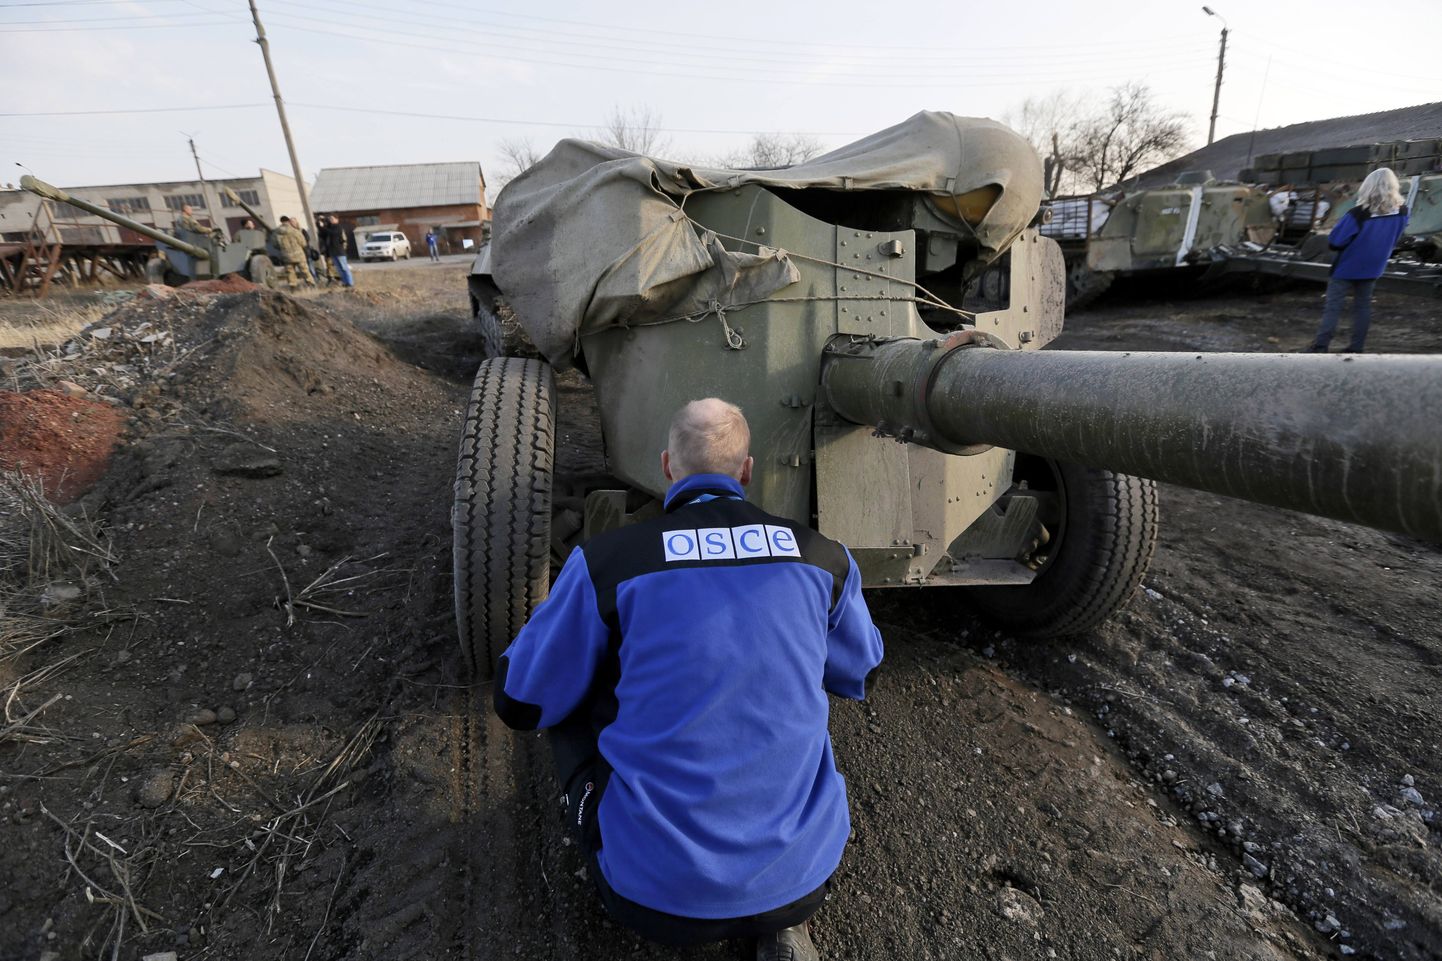 OSCE vaatleja Ida-Ukrainas Druživkas. Suurriikide juhid rõhutasid vajadust suurendada OSCE monitooringutegevust konfliktipiirkonnas.